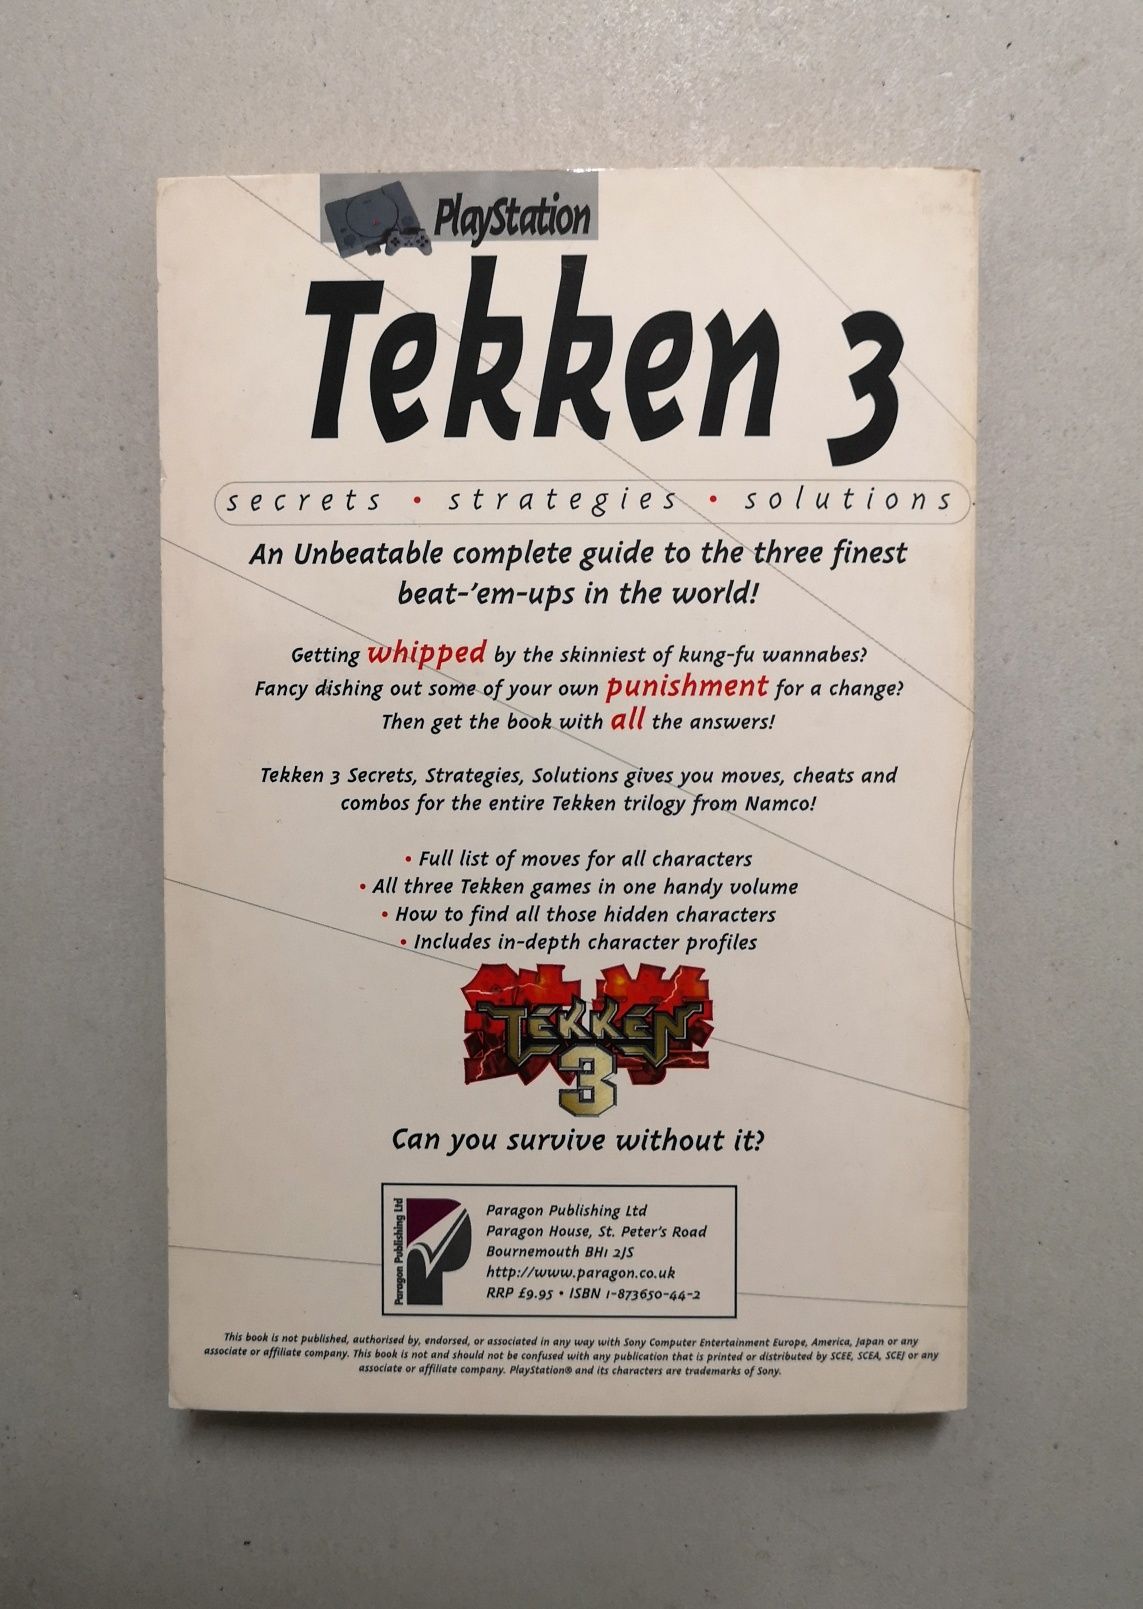 Tekken 3 (Playstation) | Livro de segredos / estratégias / soluções